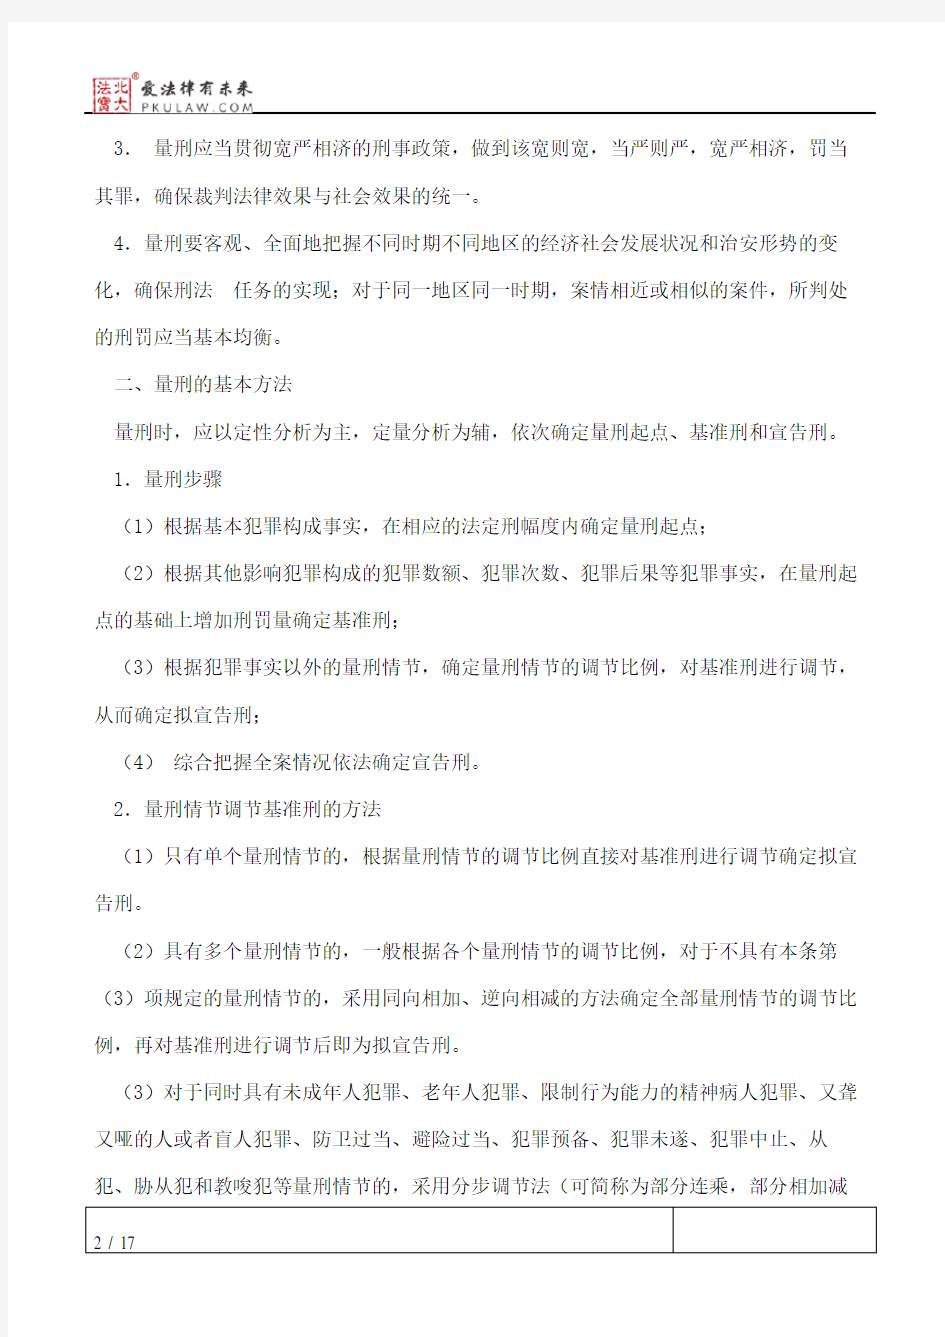 辽宁省高级人民法院《关于常见犯罪的量刑指导意见》实施细则(一)